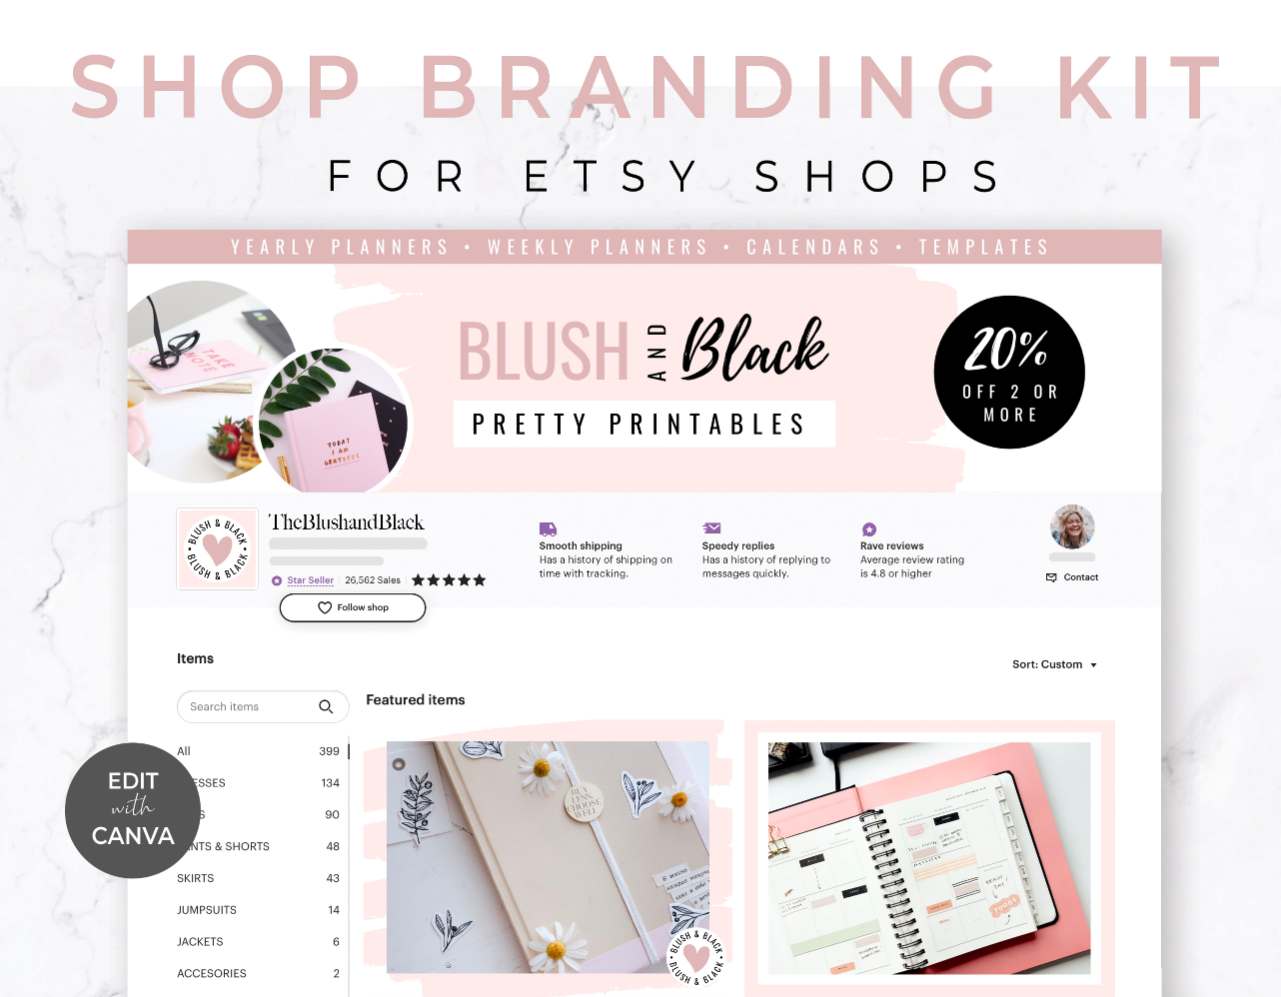 Etsy Shop Branding Kit for Canva - Blush & Black